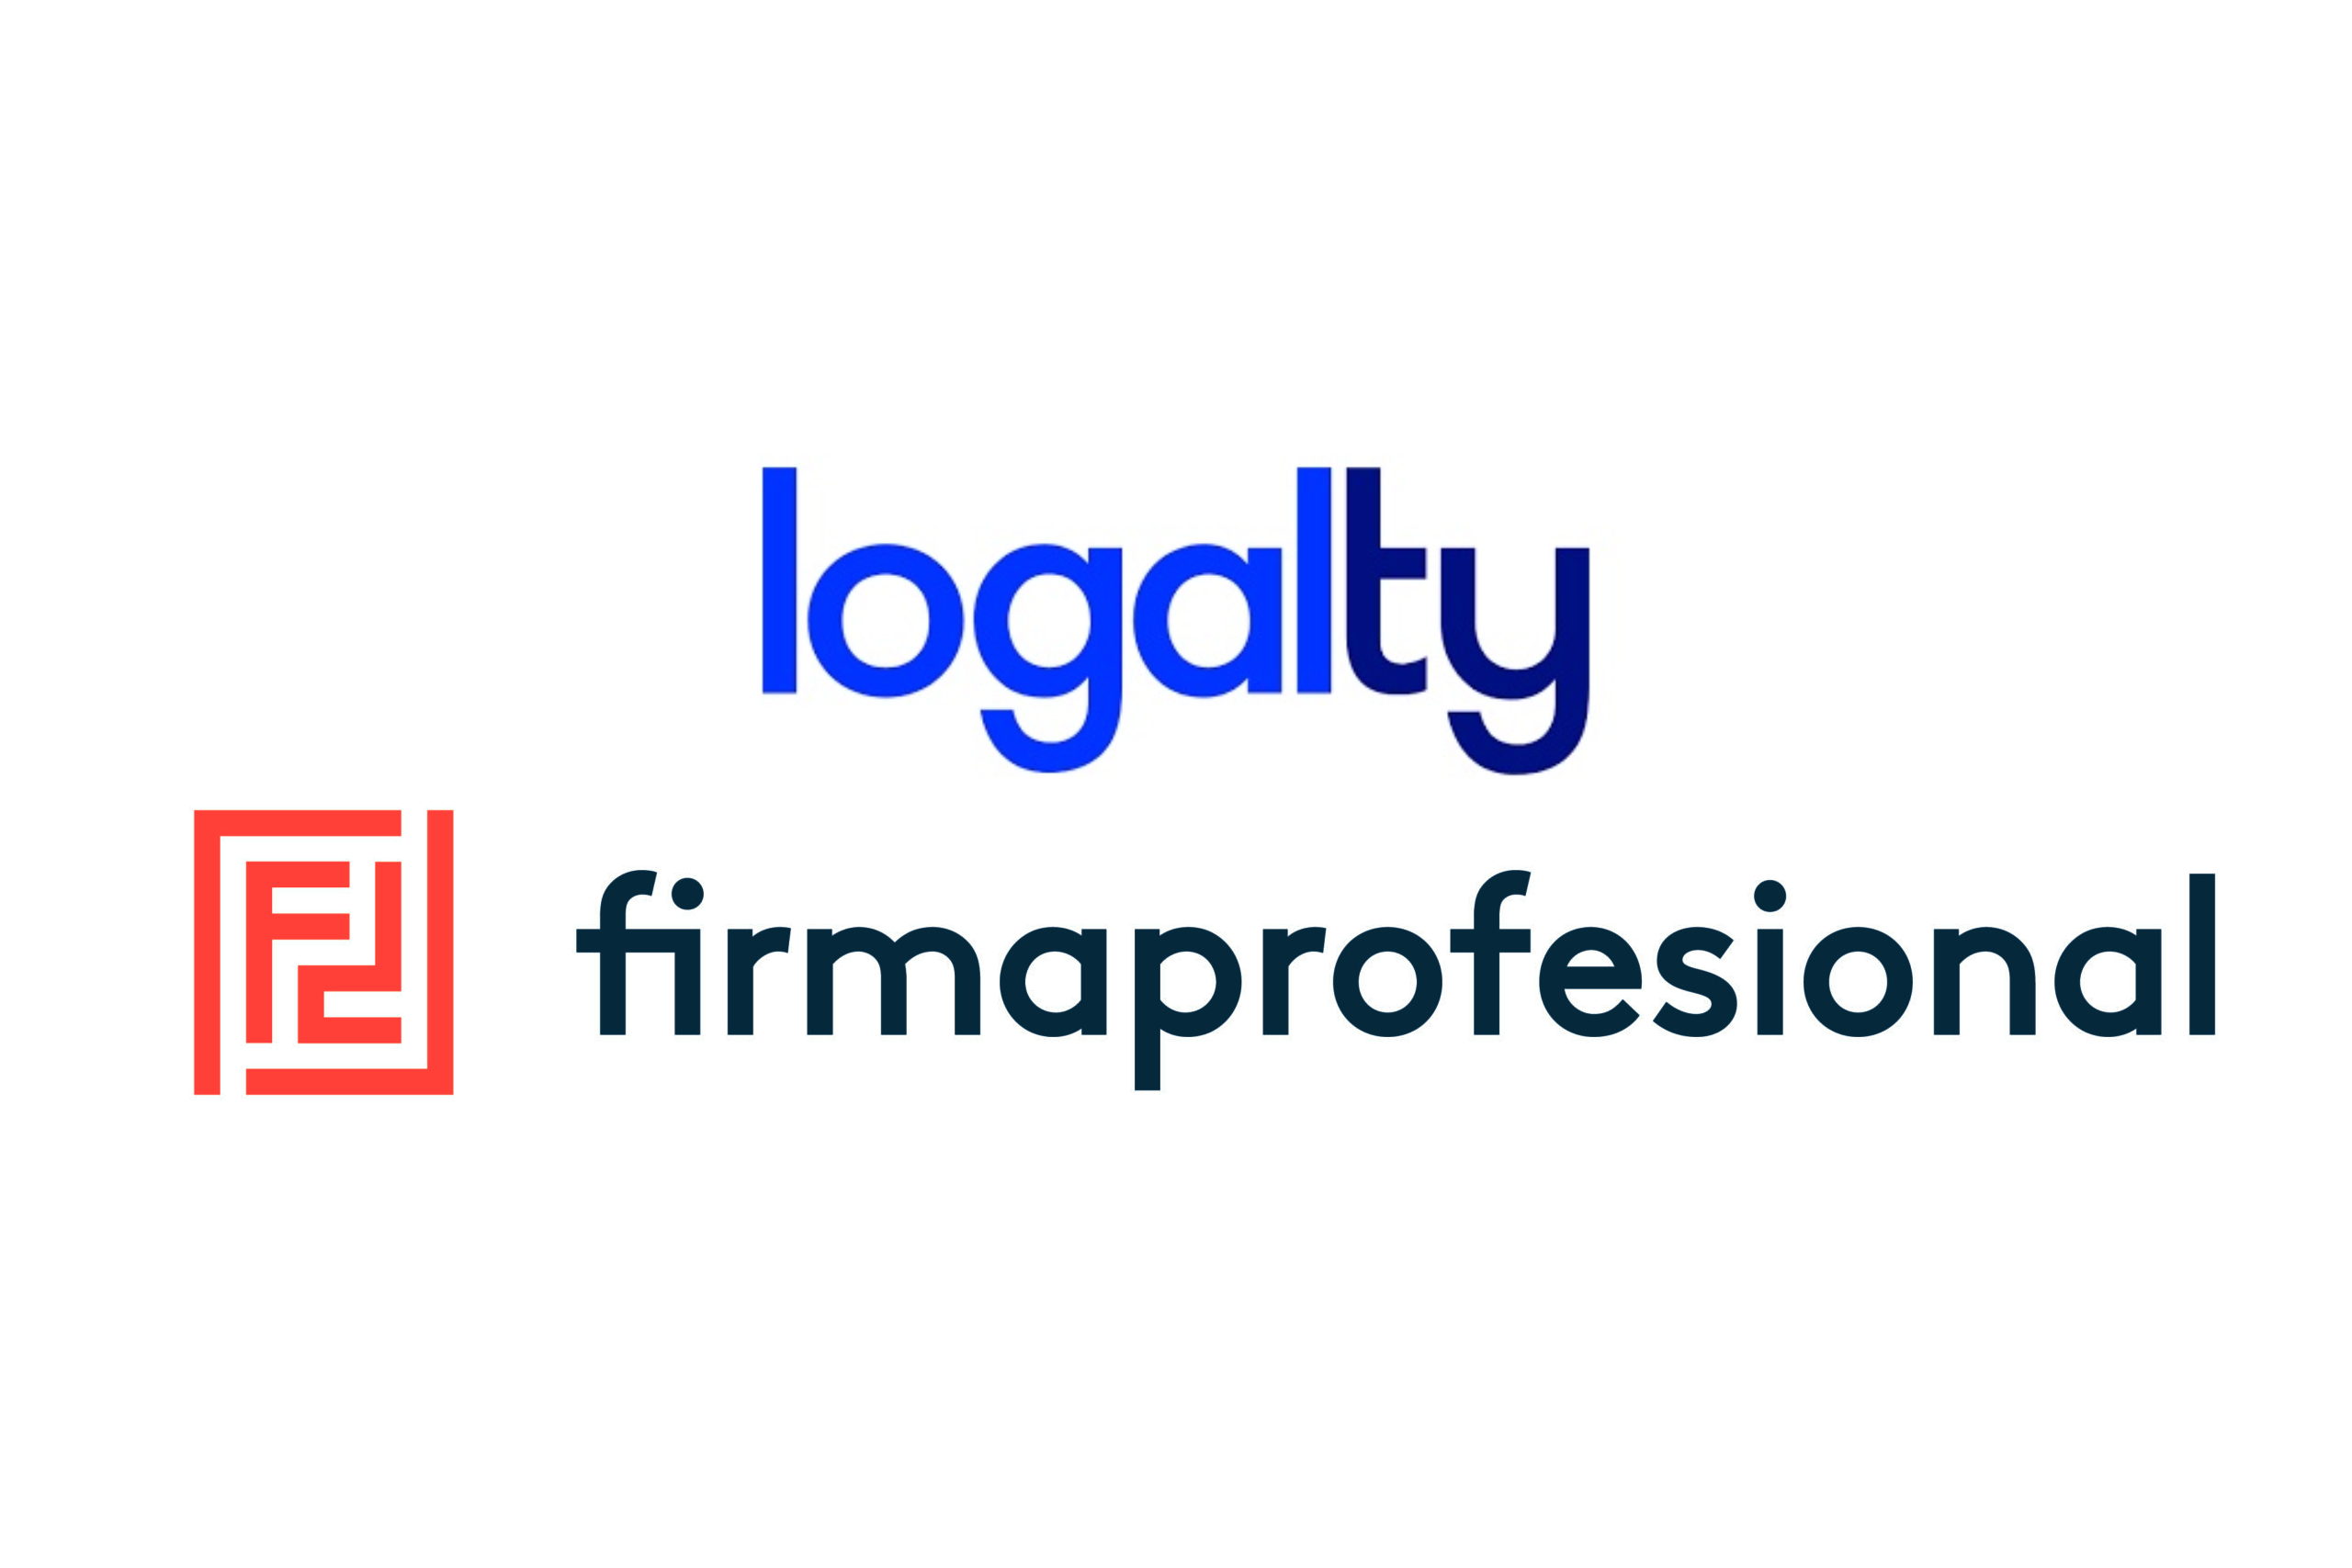 Grupo Logalty adquiere Firmaprofesional y refuerza su área de identidad y firma electrónica cualificada